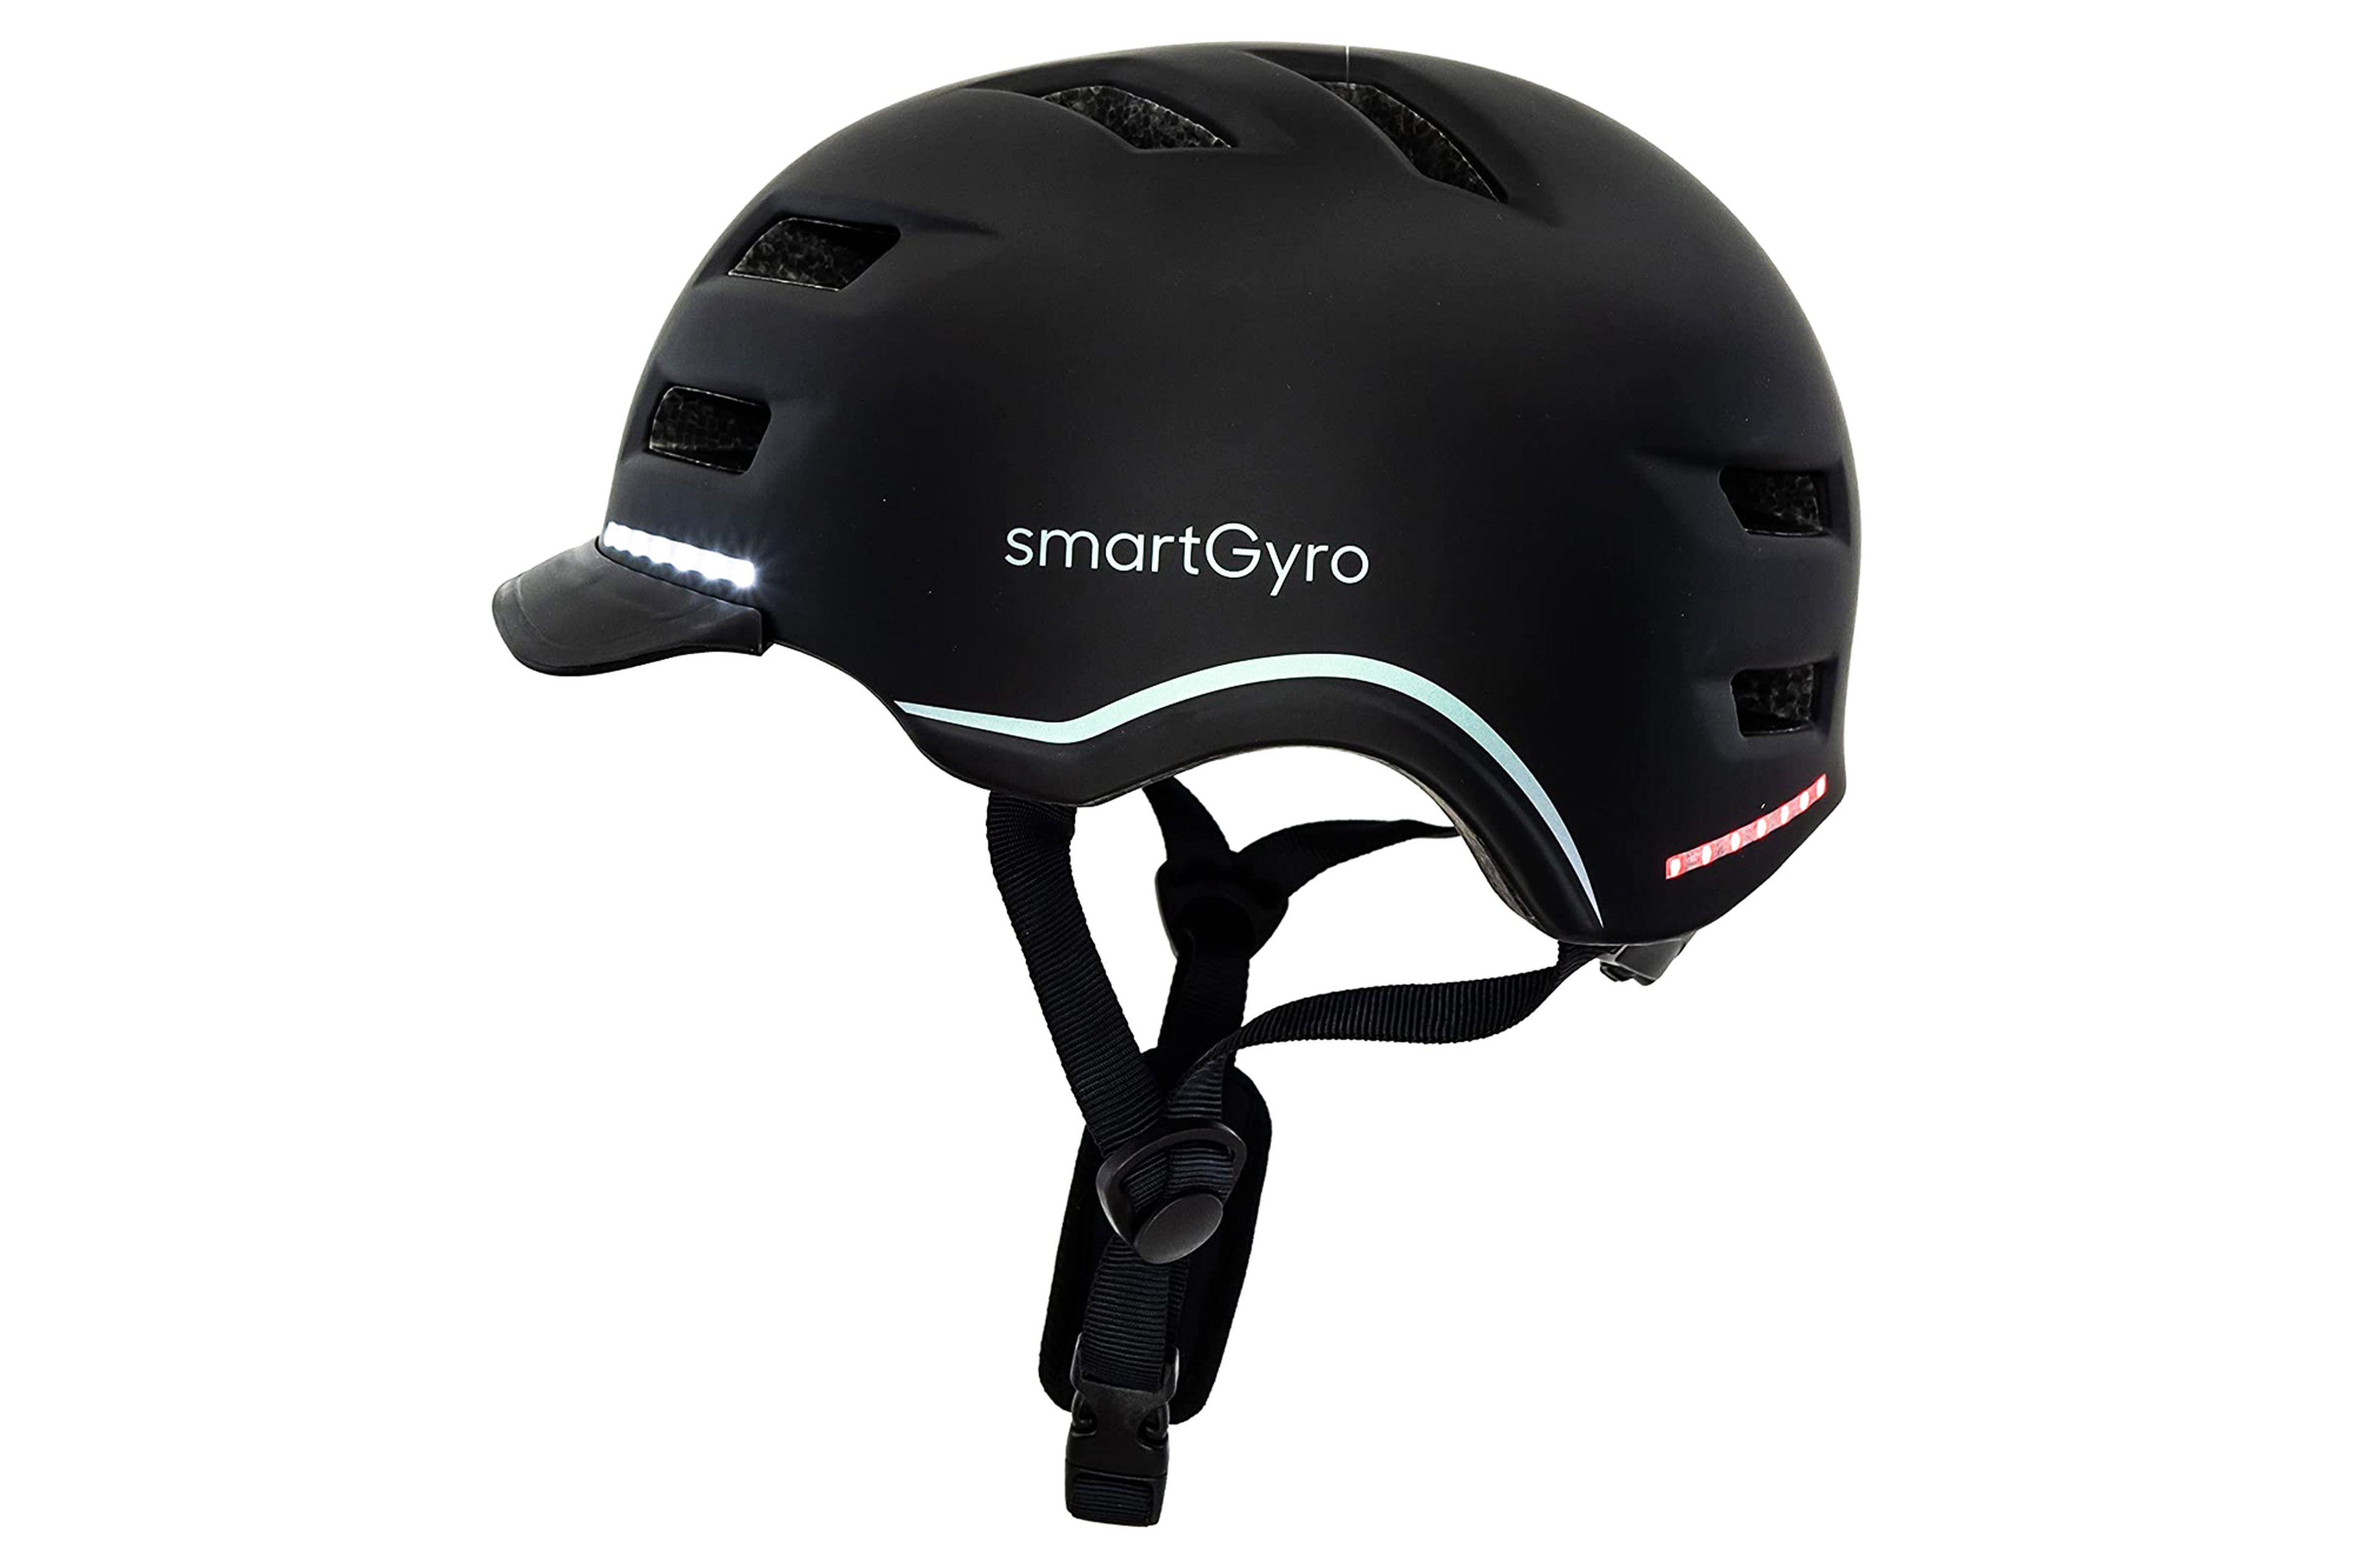 Casco con luz smartGyro Smart Helmet